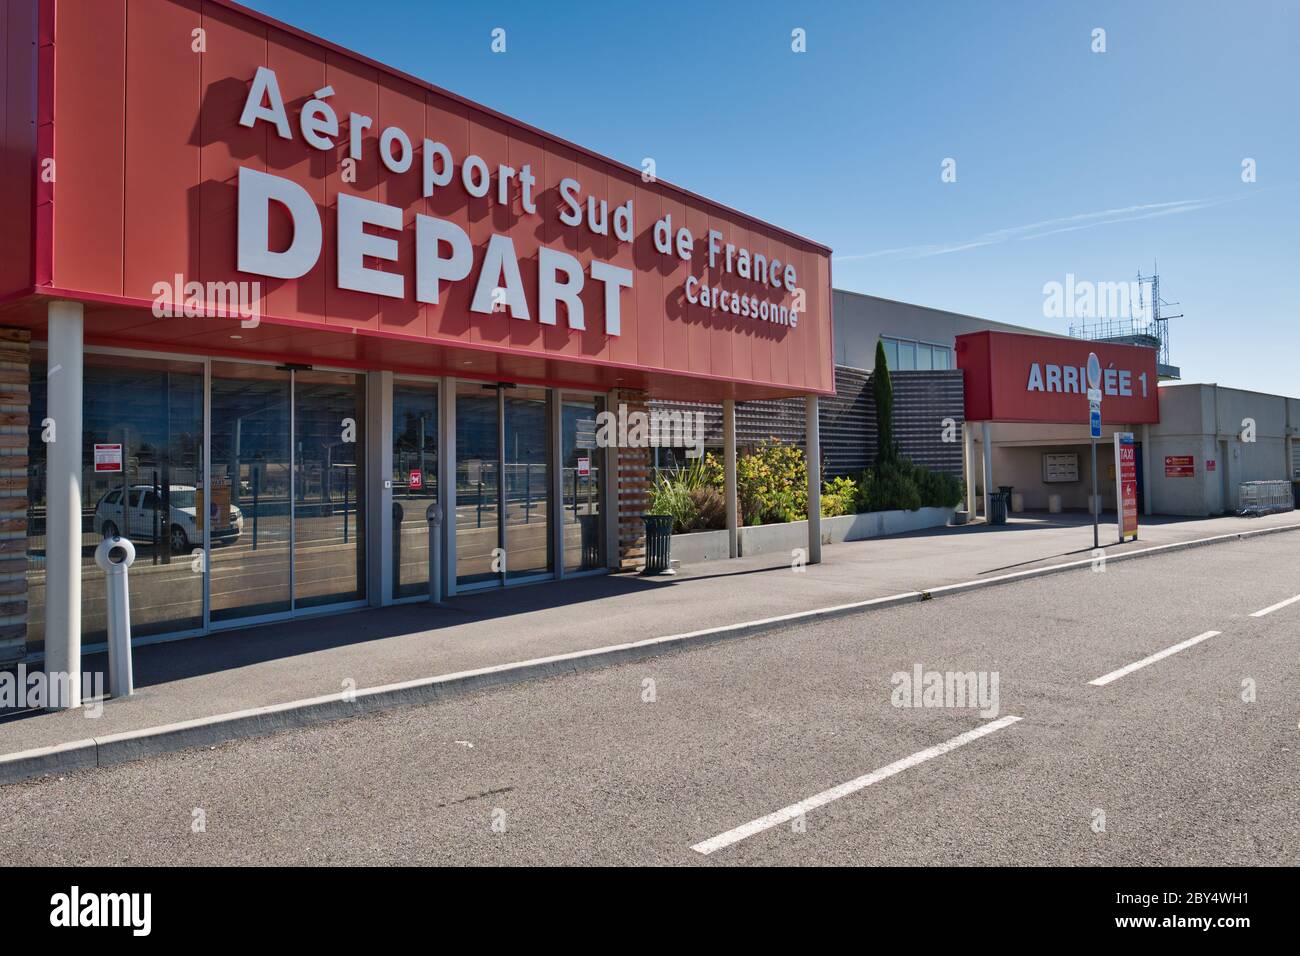 Carcassonne Aude France 05/26/20 Aeroporto di Carcassonne-Salvaza. Ingresso partenza volo e uscita arrivi. Grande scritta bianca sui pannelli rossi. Vetro Foto Stock